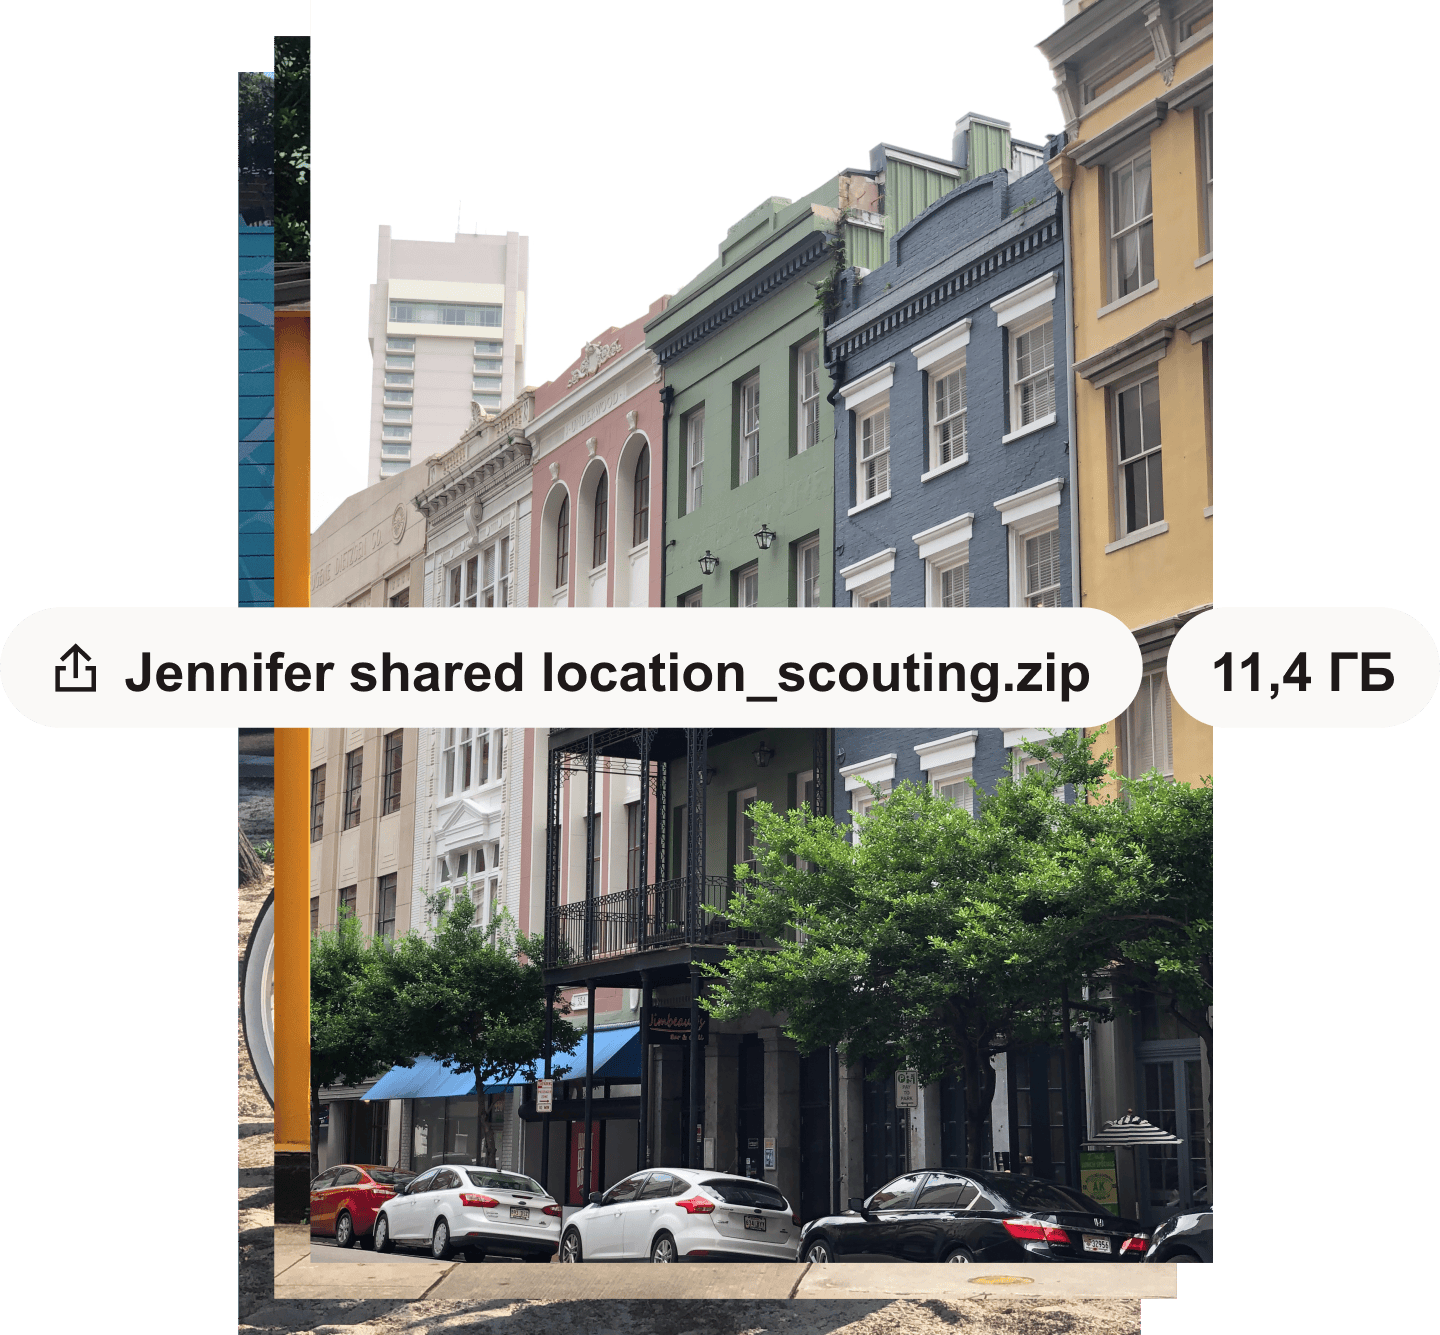 Фотография городской улицы с разноцветными зданиями. На фотографию наложены белые выноски с указанием имени и размера файла.